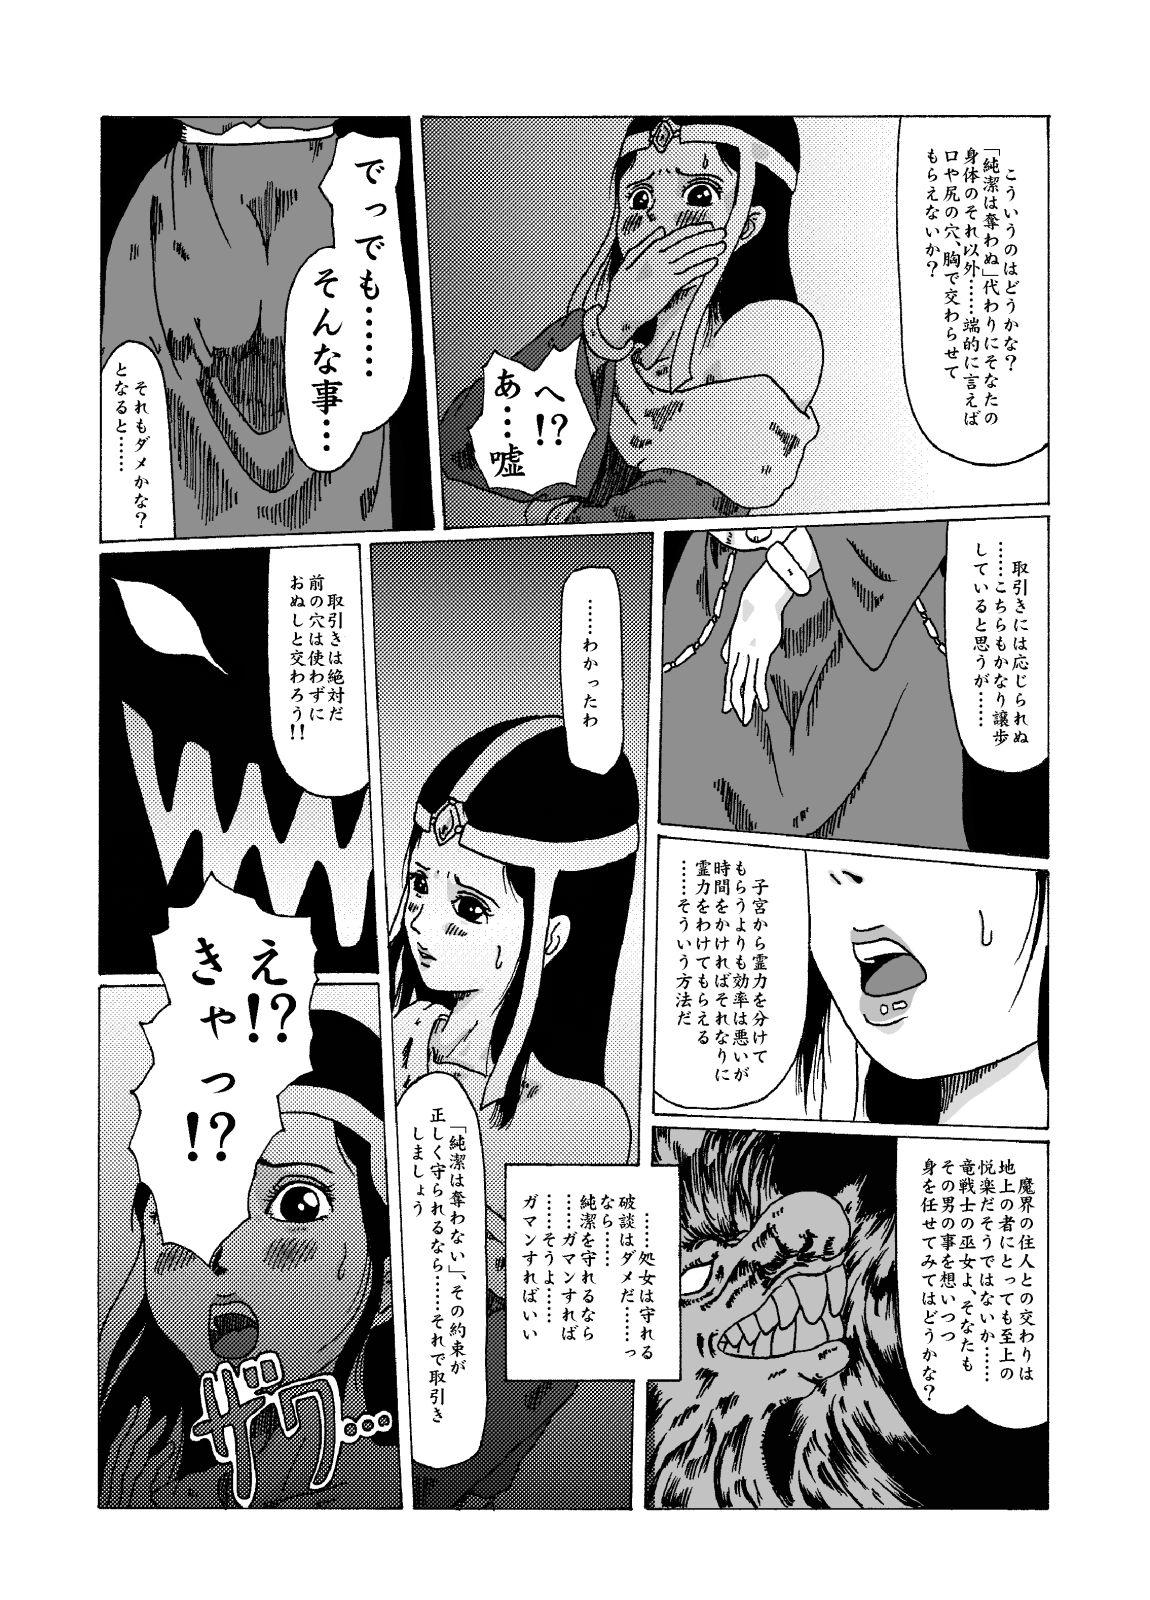 Fucks meruru hakai-dragon qowst dai no daibouken ibunroku kijinro Toys - Page 6